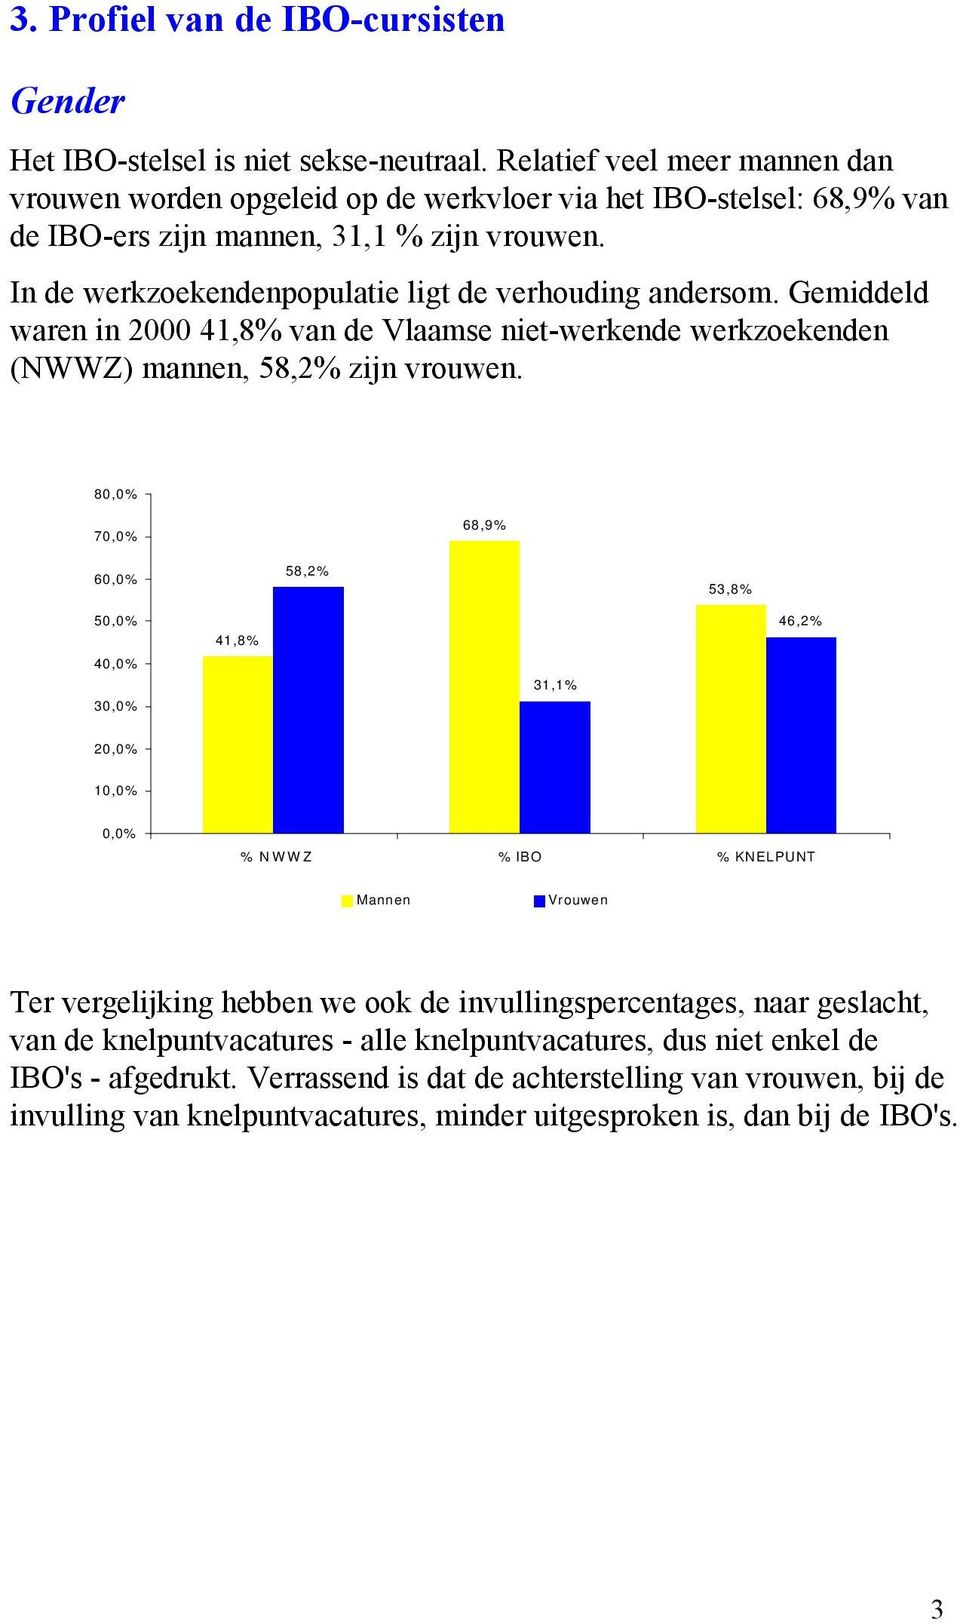 In de werkzoekendenpopulatie ligt de verhouding andersom. Gemiddeld waren in 2000 41,8% van de Vlaamse niet-werkende werkzoekenden (NWWZ) mannen, 58,2% zijn vrouwen.